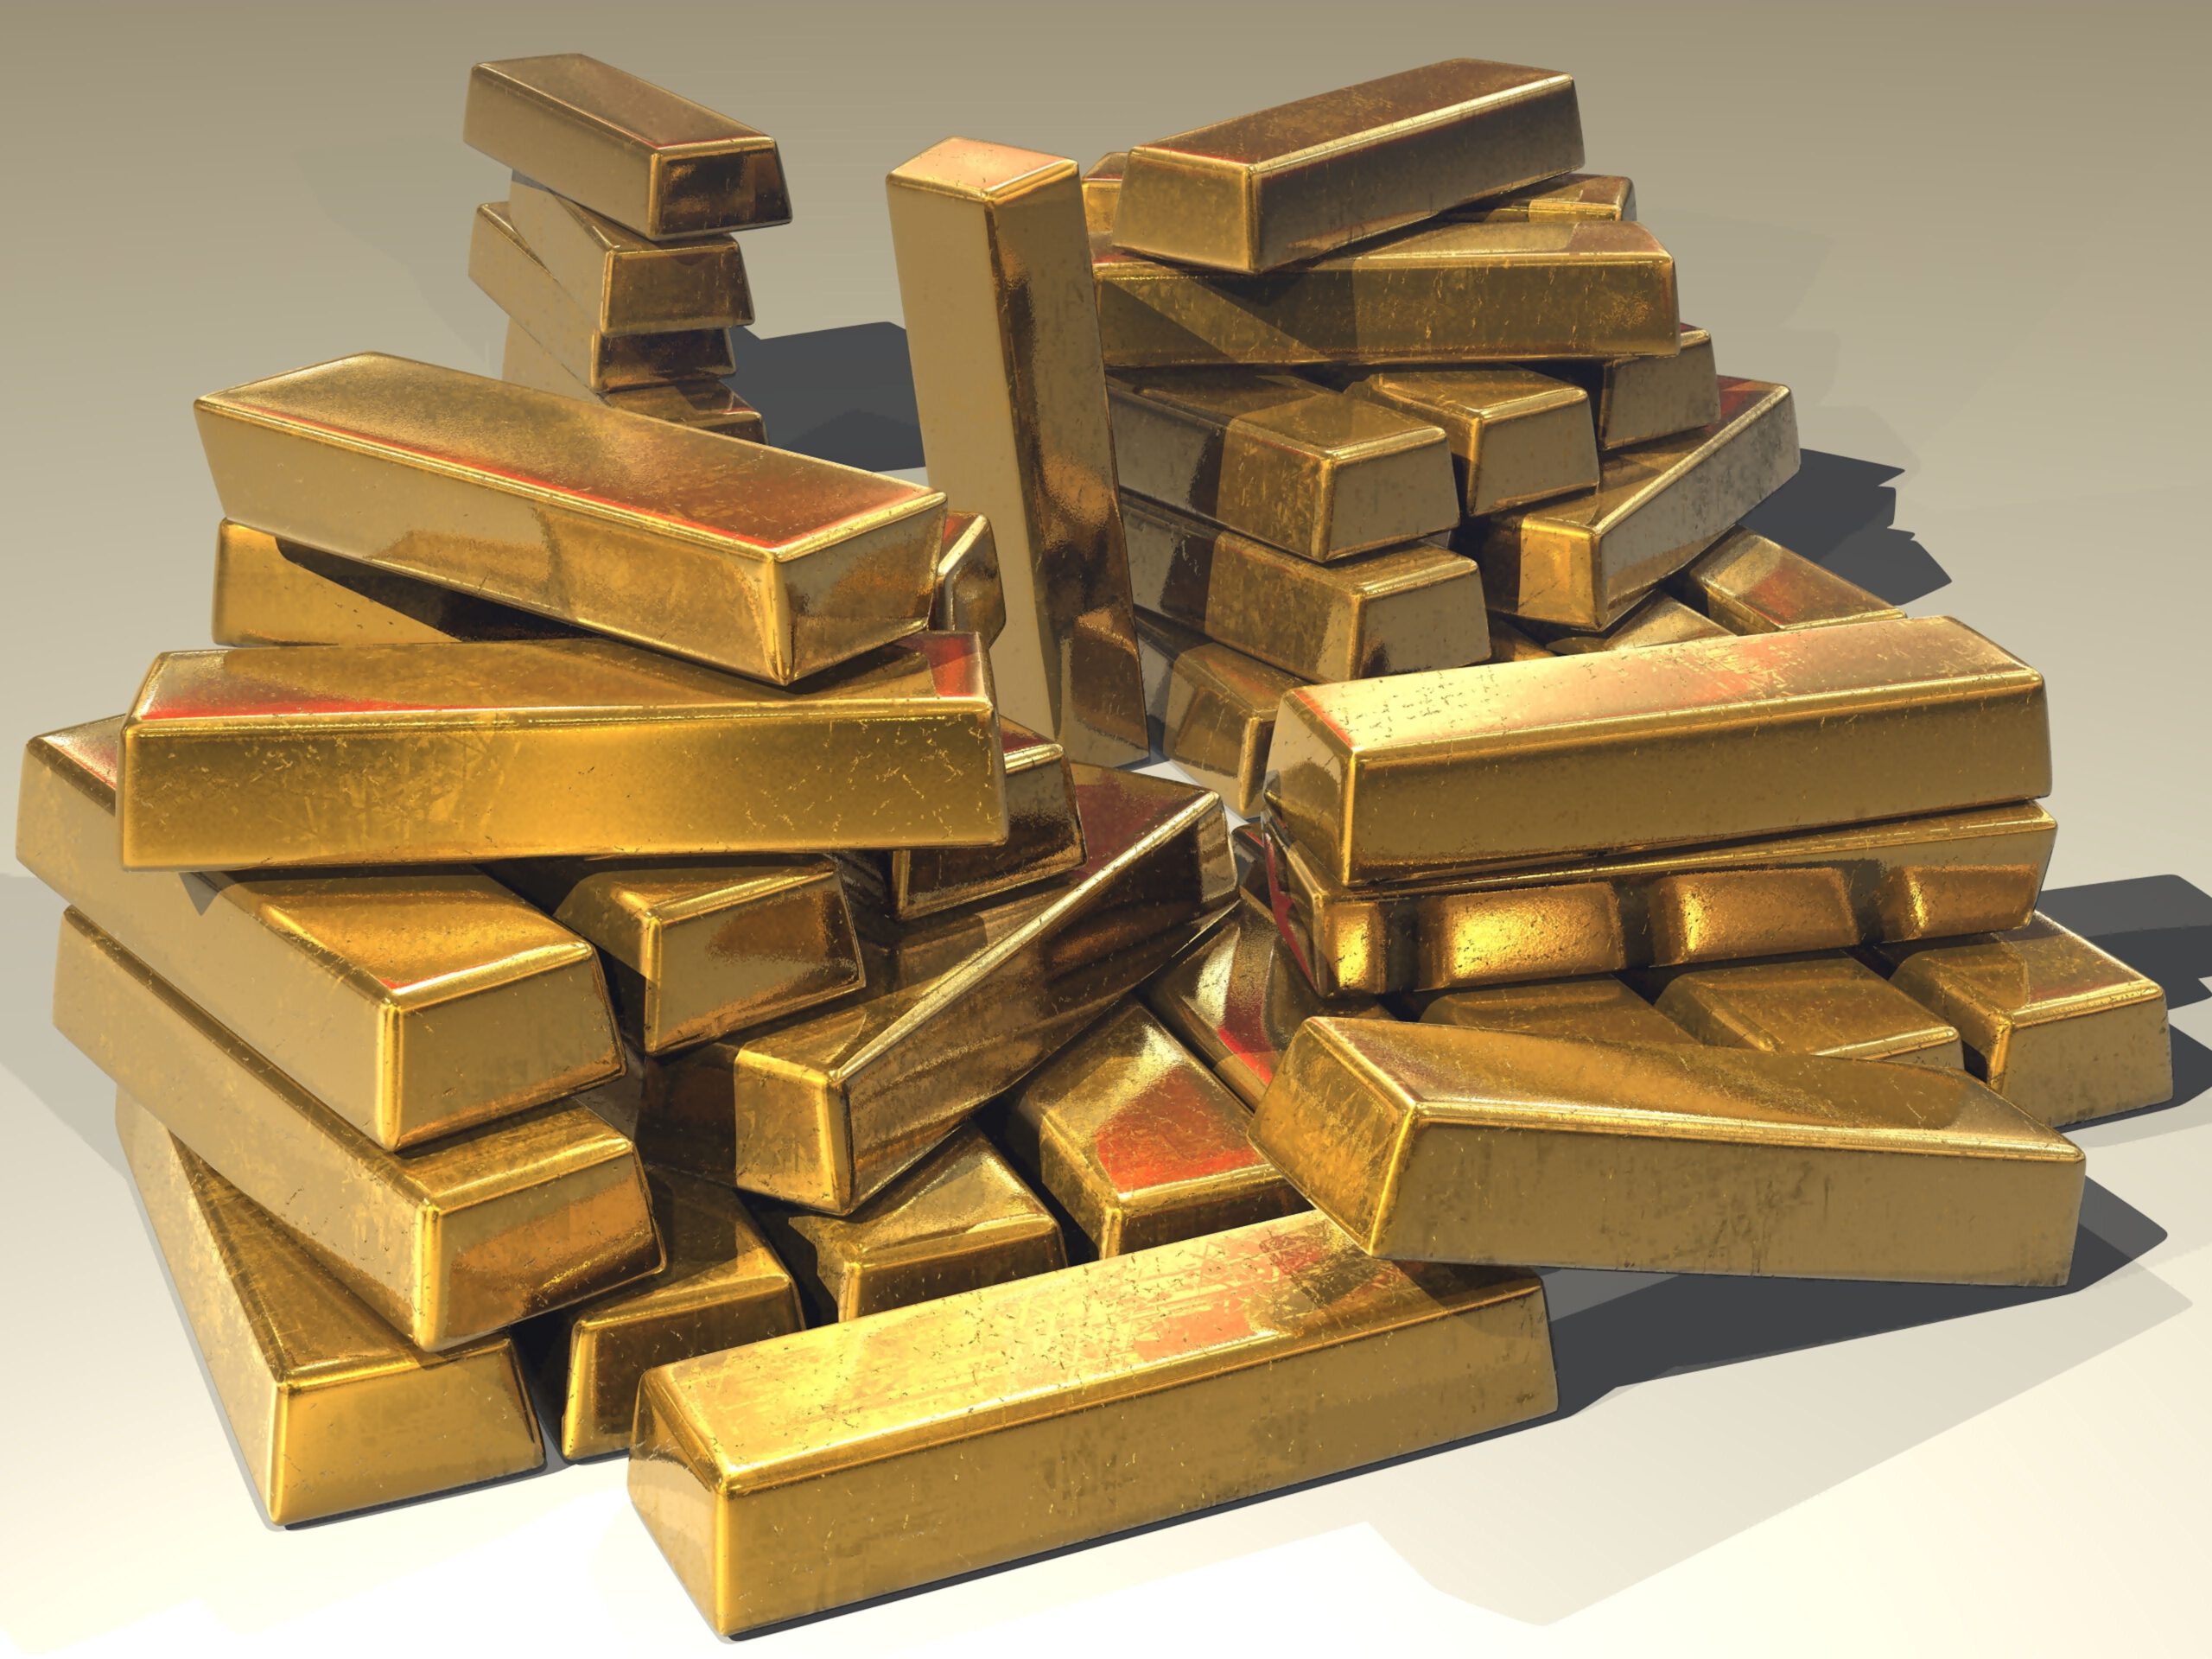 Sztabki złota na białym tle jako przykład surowca do inwestycji